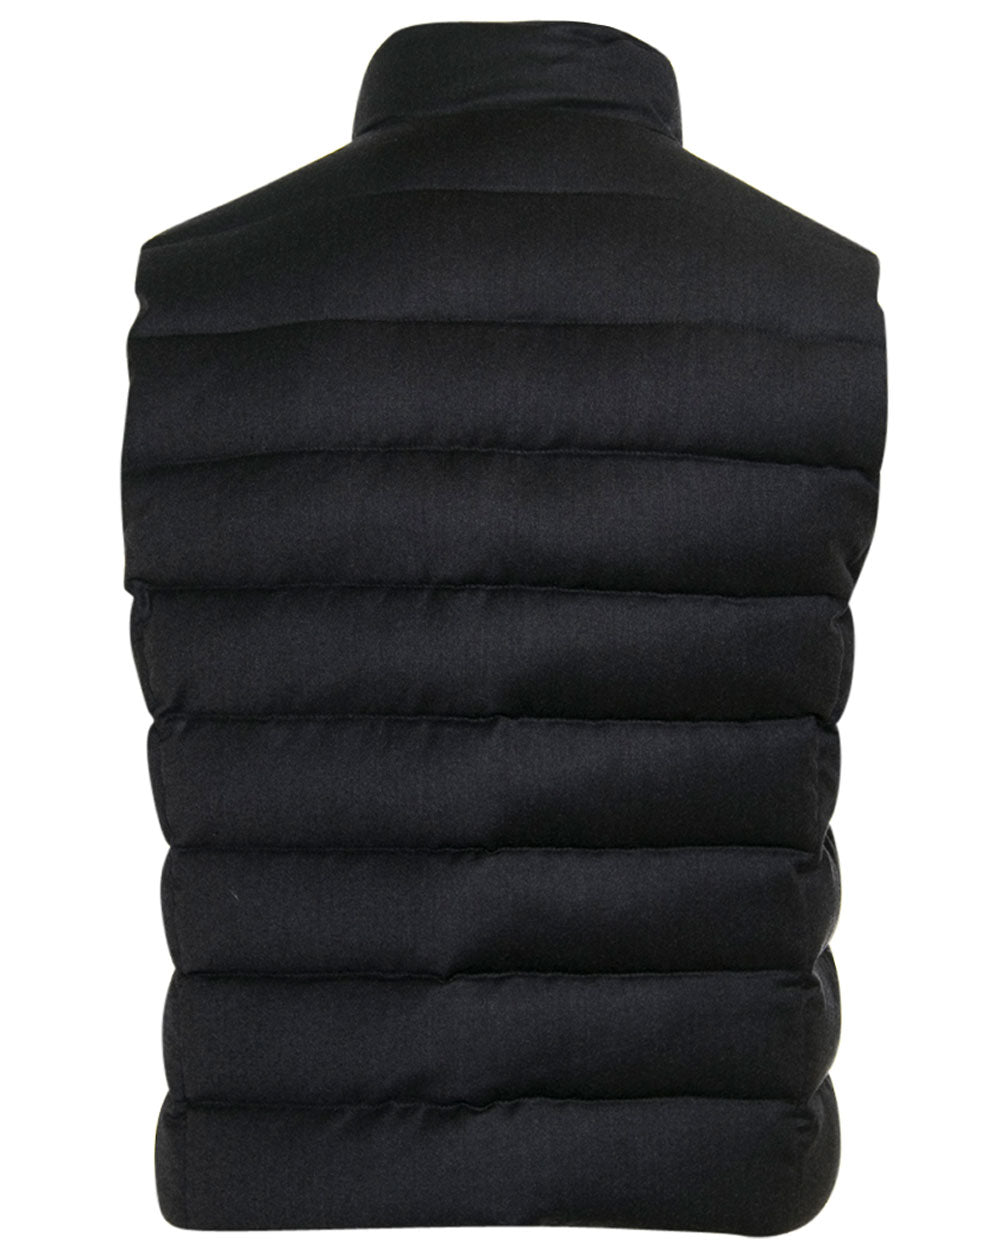 Blue Grey Oliver Wool Vest